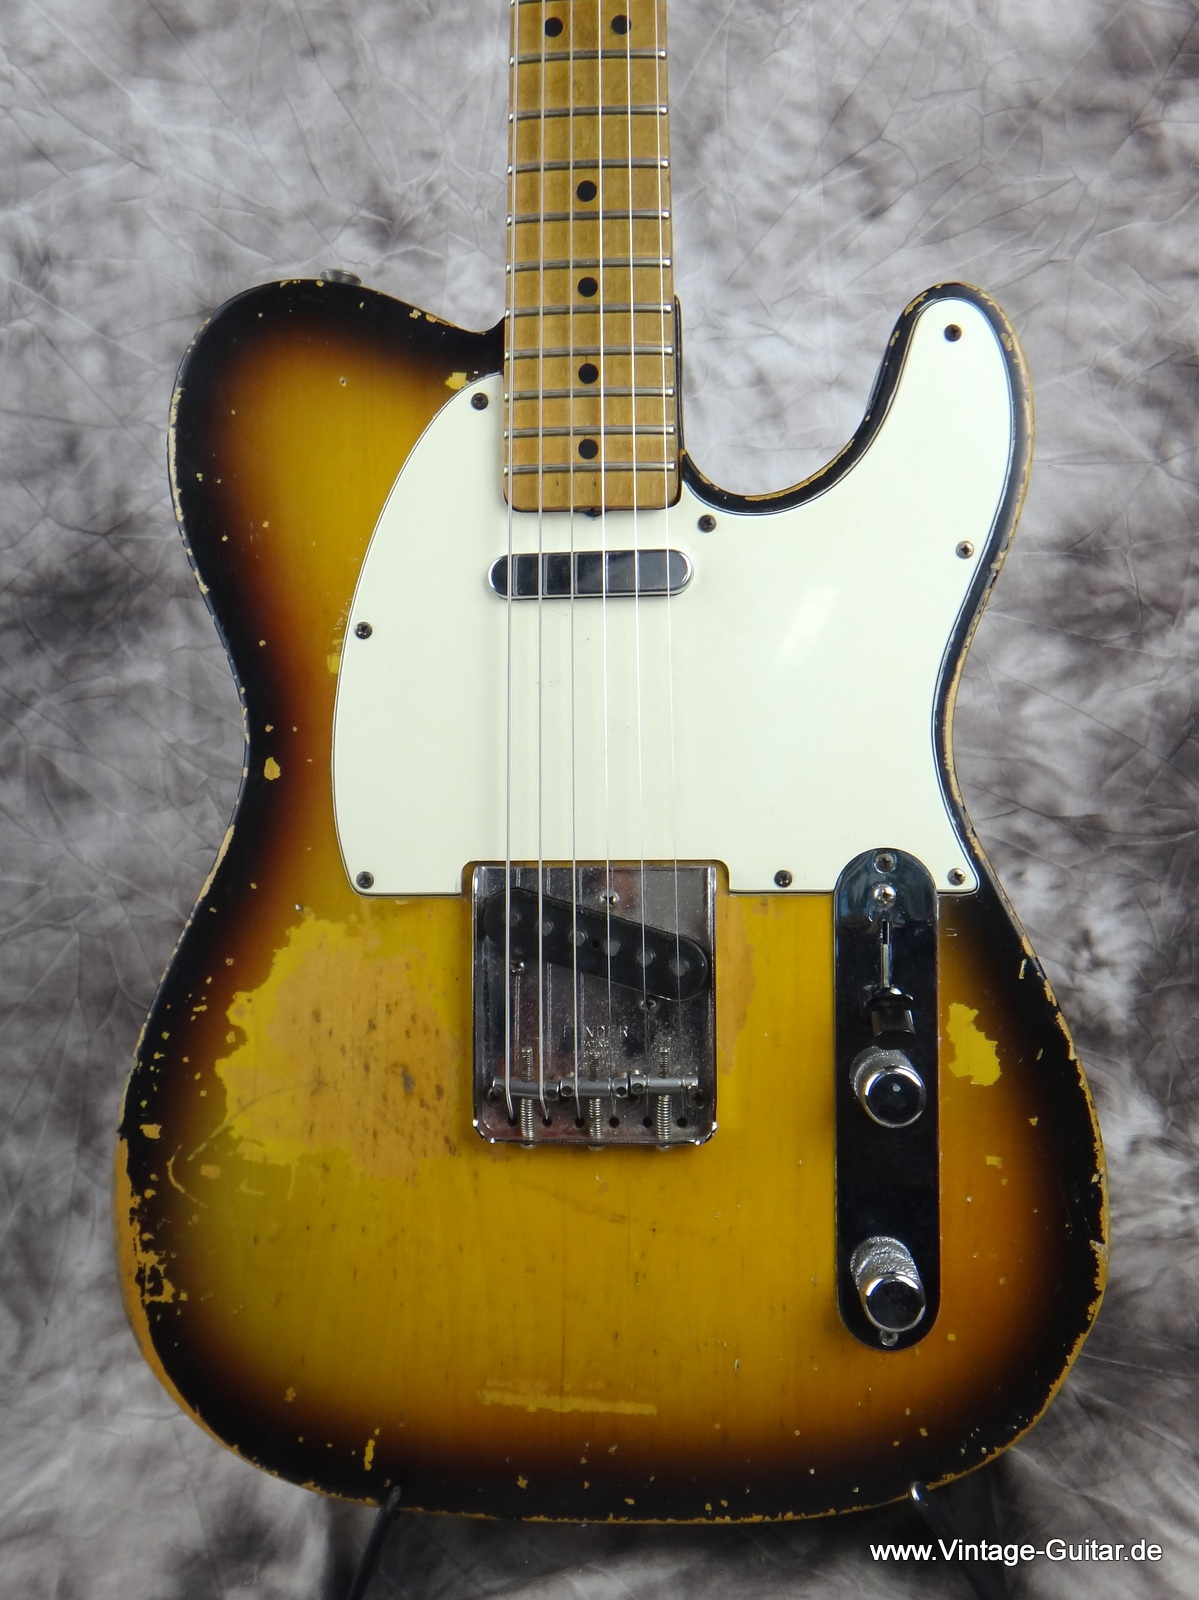 Fender_Telecaster-1967-sunburst-002.JPG